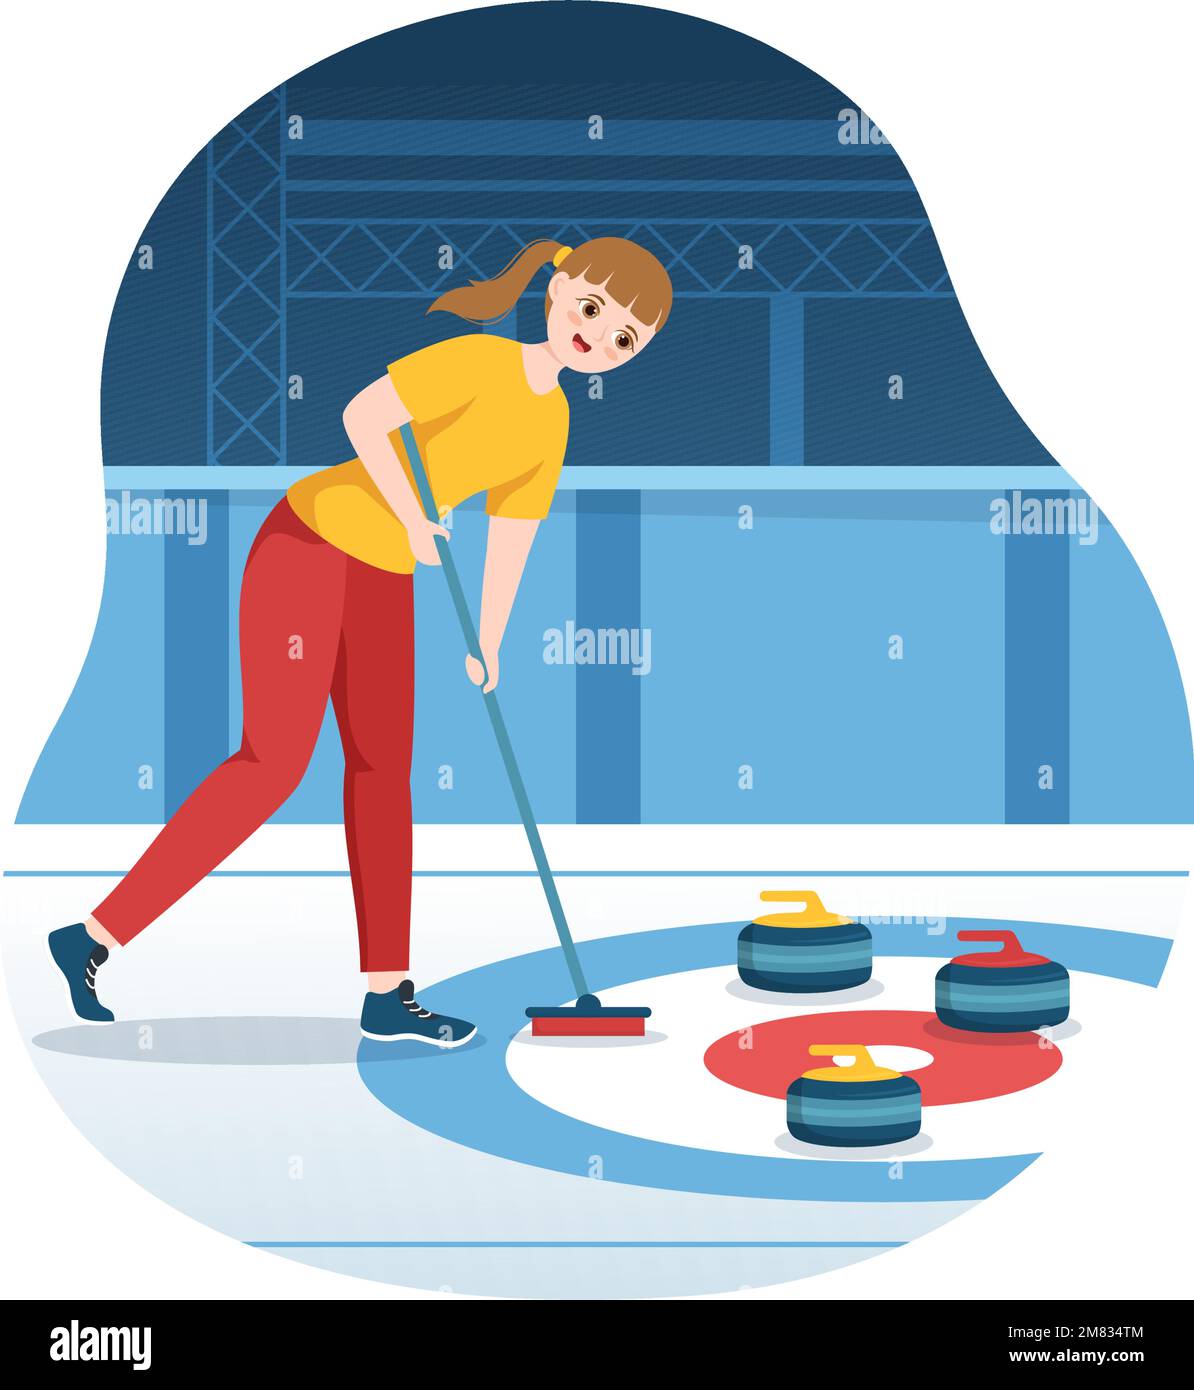 Curling Sport-Illustration mit Team, das Game of Rocks und Besen im rechteckigen Eisring in Championship Flat Cartoon Hand Drawn Template spielt Stock Vektor